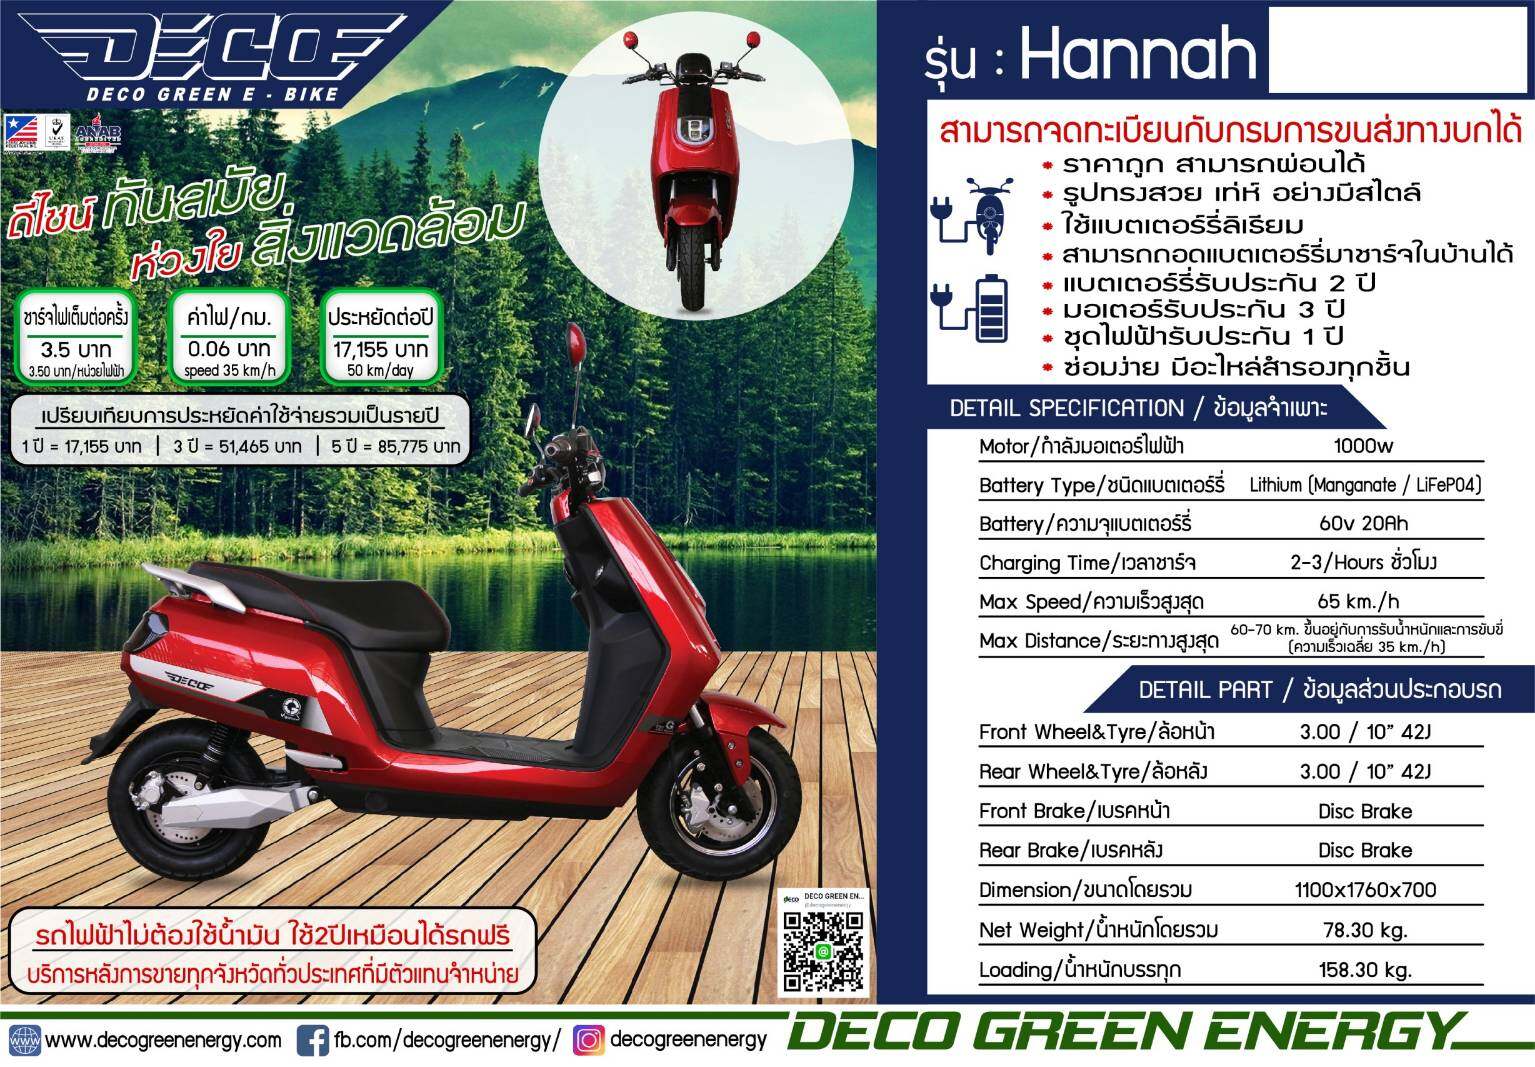 ⚡มอเตอร์ไซค์ไฟฟ้า Deco รุ่น Hannah 1000W(ราคาสด-ผ่อนบัตรเครดิต) จดทะเบียน พรบ ได้ แบตเตอรี่ ลิเธียม Fast charge 2-3 ชม.